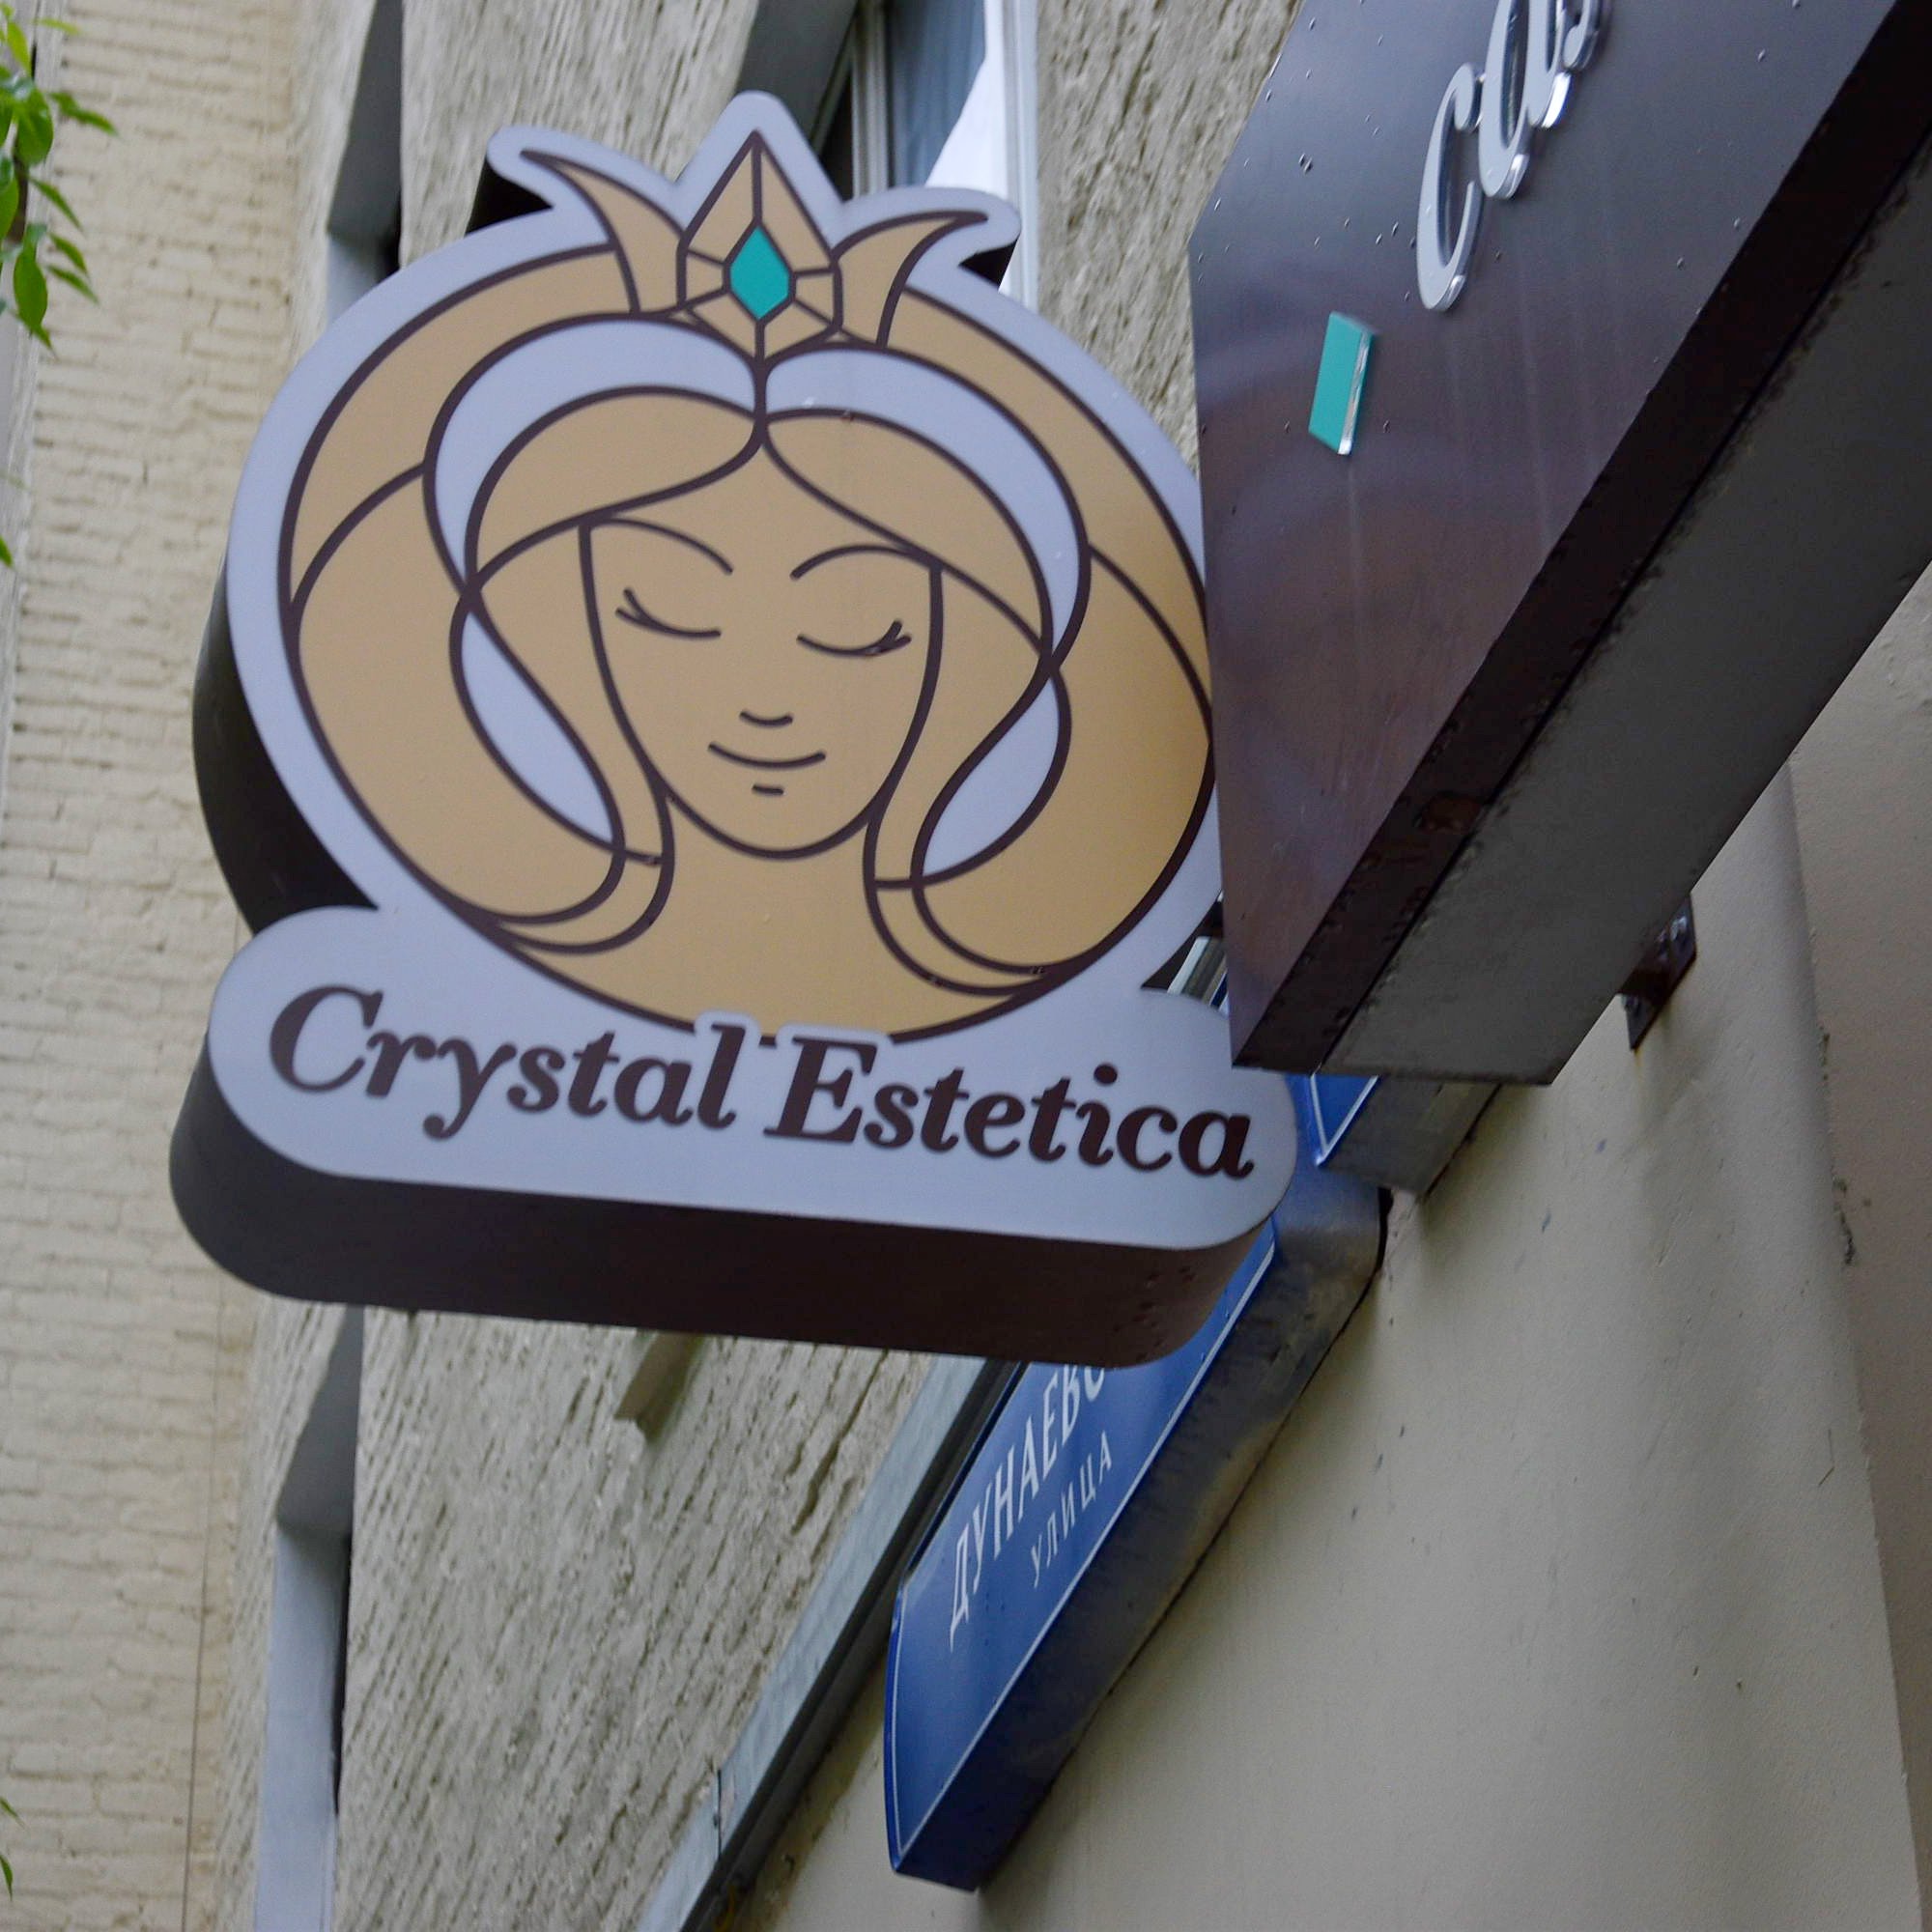 Crystal Estetica, салон красоты и эстетики, улица Дунаевского, 4, 1 этаж